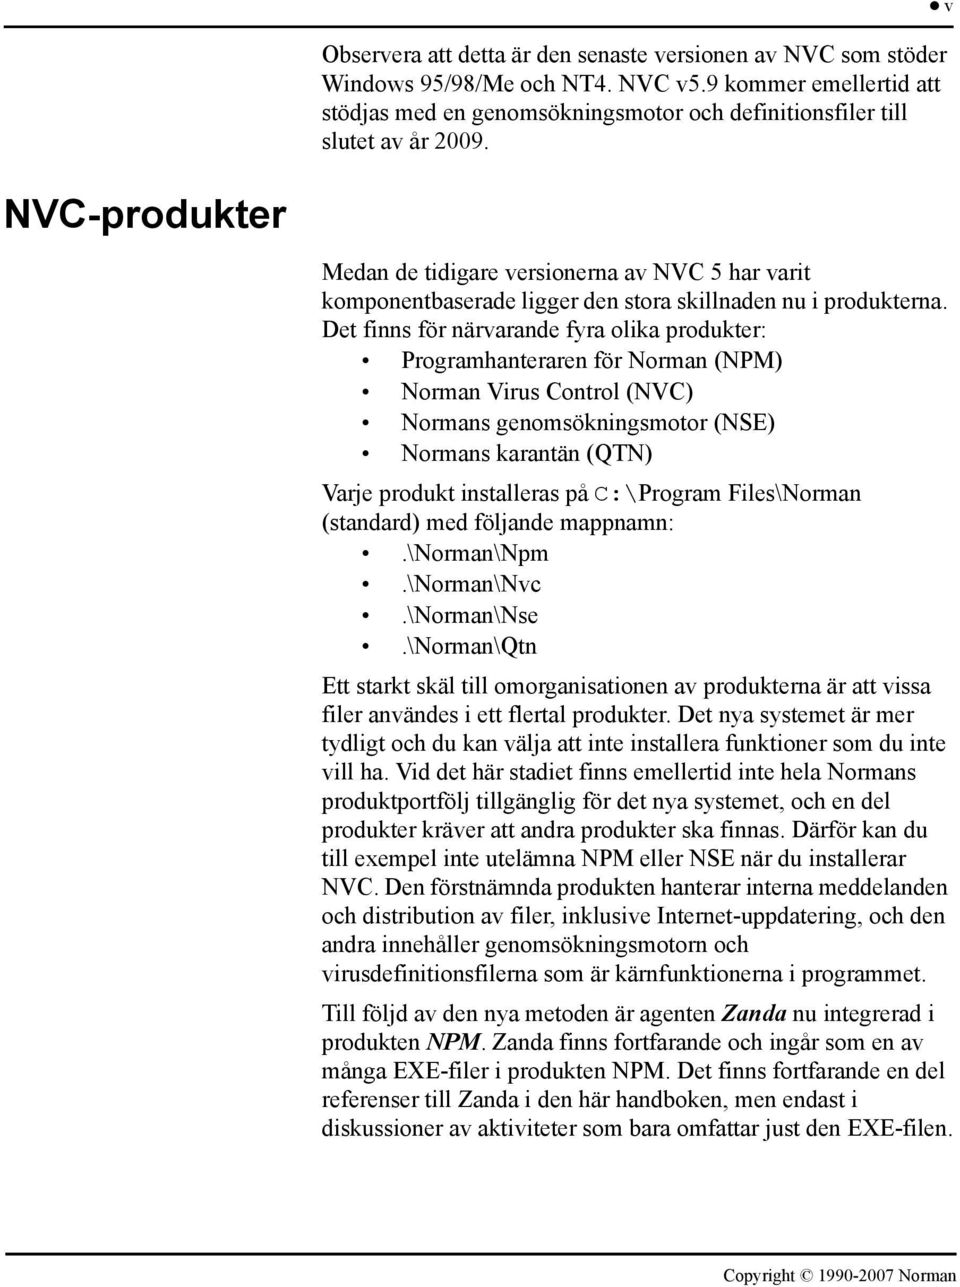 Det finns för närvarande fyra olika produkter: Programhanteraren för Norman (NPM) Norman Virus Control (NVC) Normans genomsökningsmotor (NSE) Normans karantän (QTN) Varje produkt installeras på